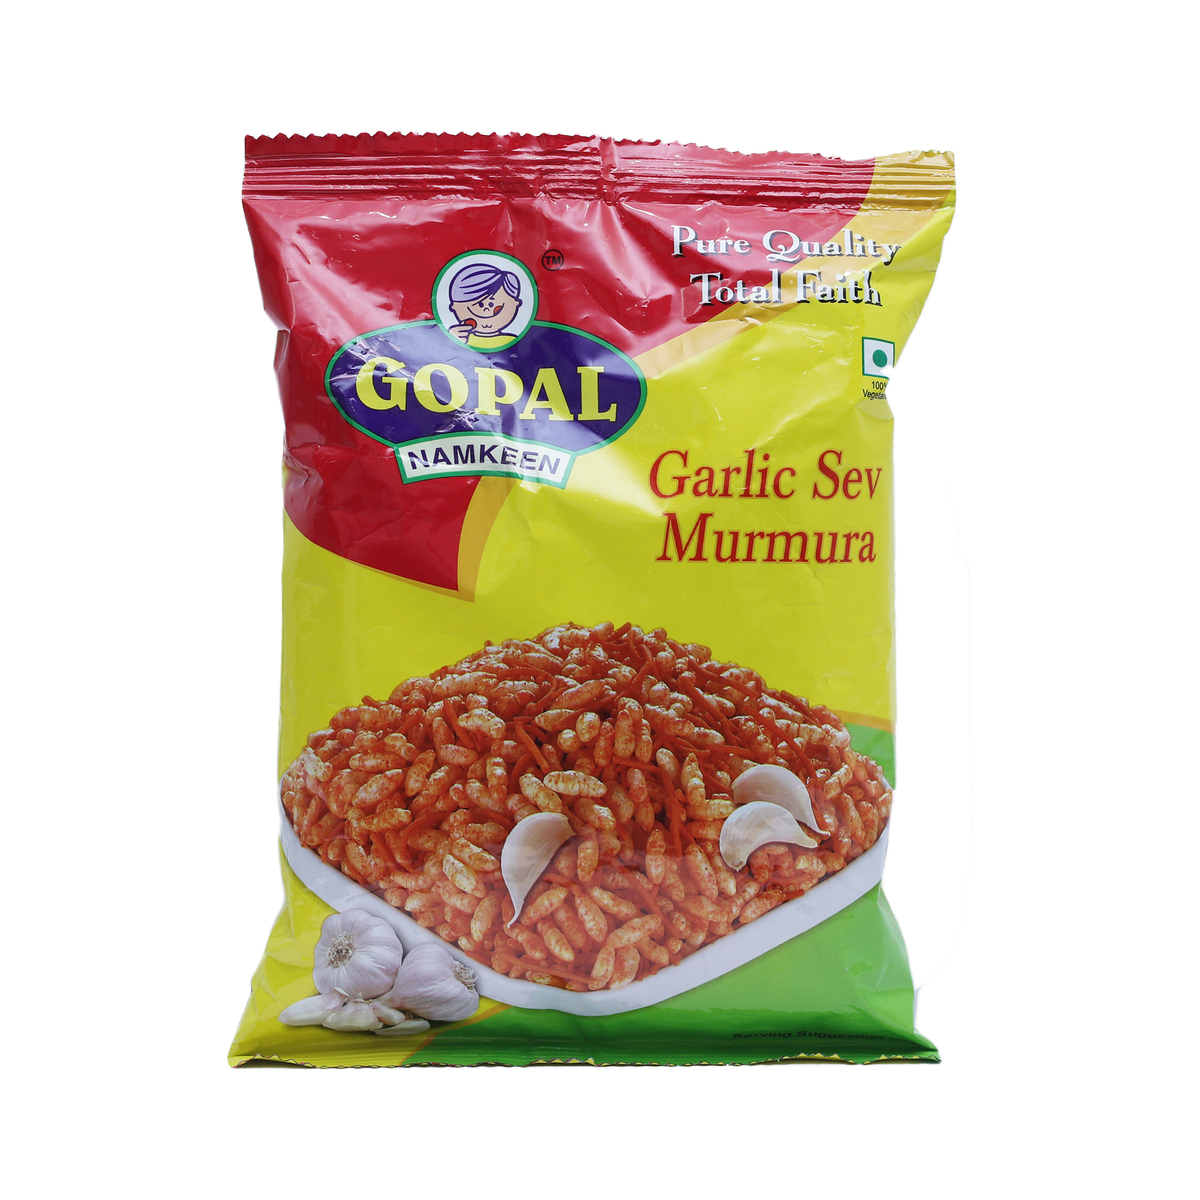 Gopal Garlic Sev Murmura 85g